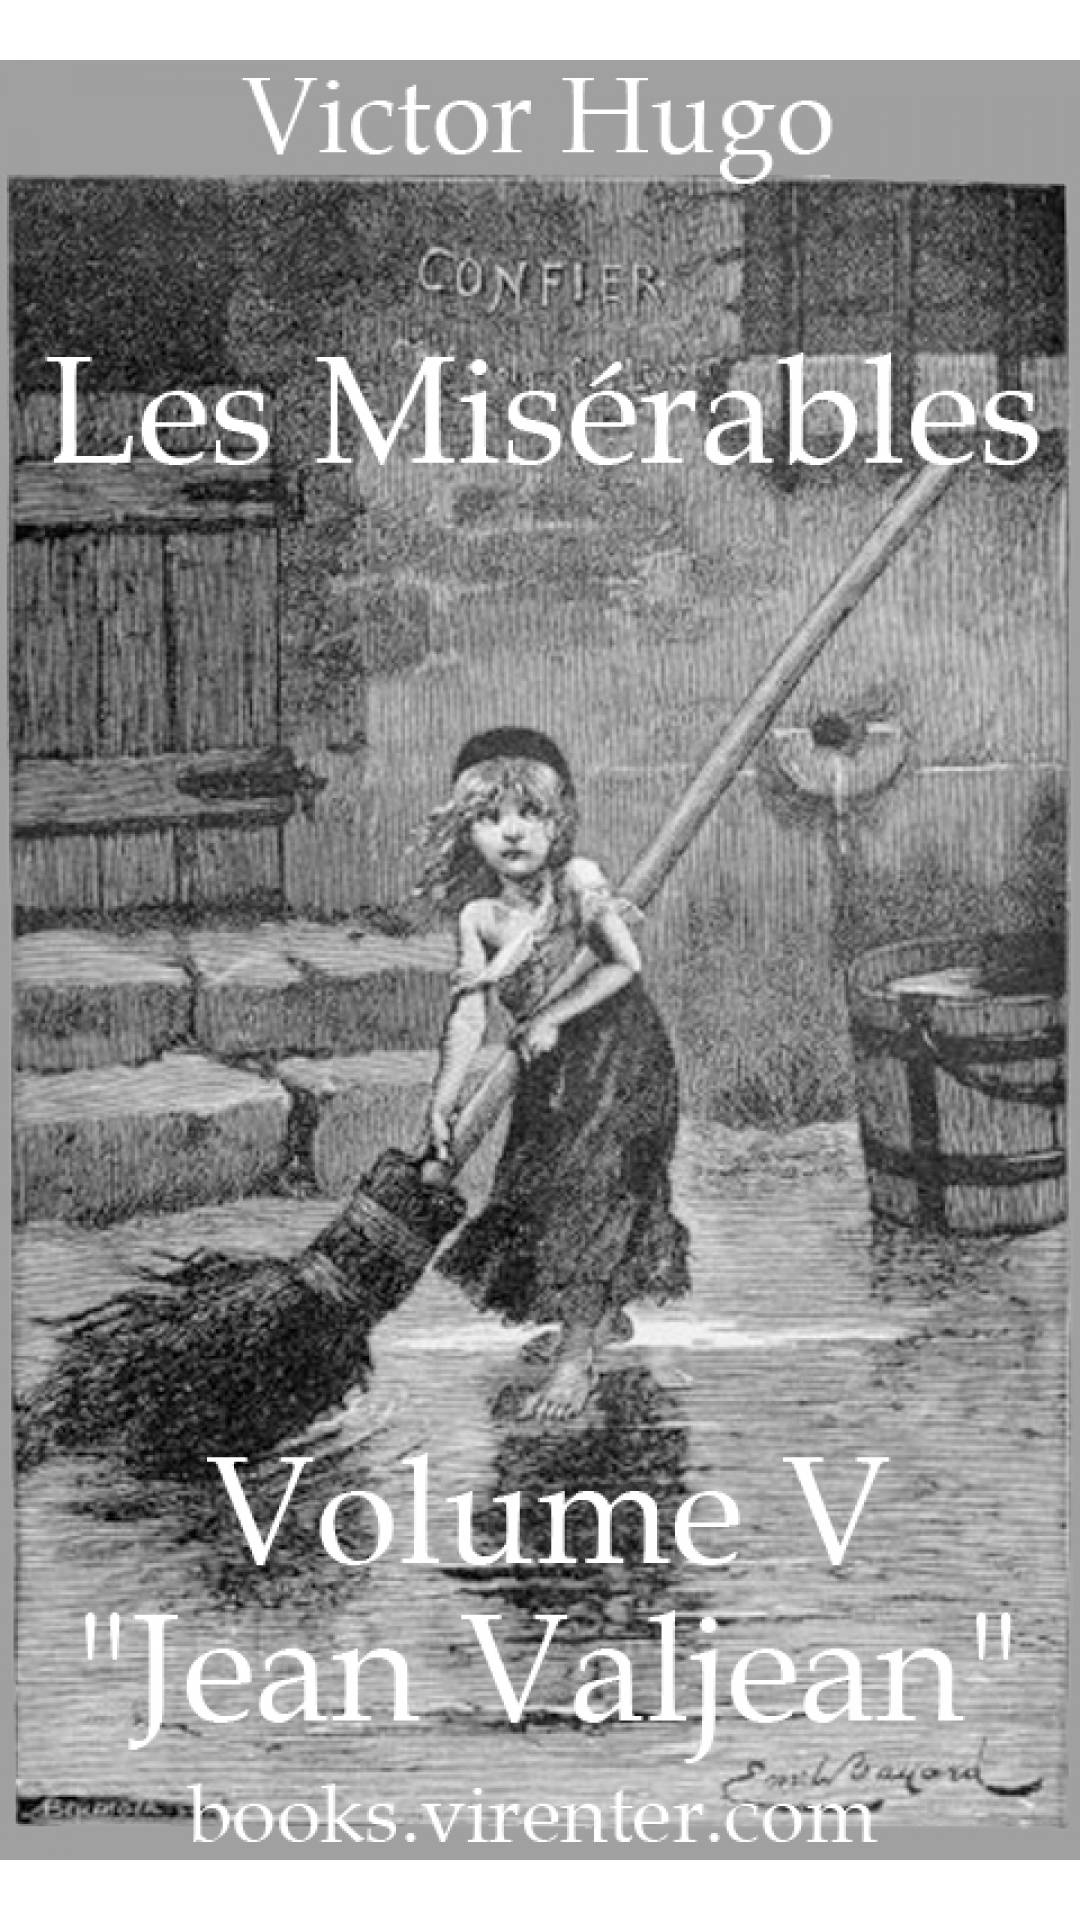 Victor Hugo - Les Misérables, Volume V ('Jean Valjean')